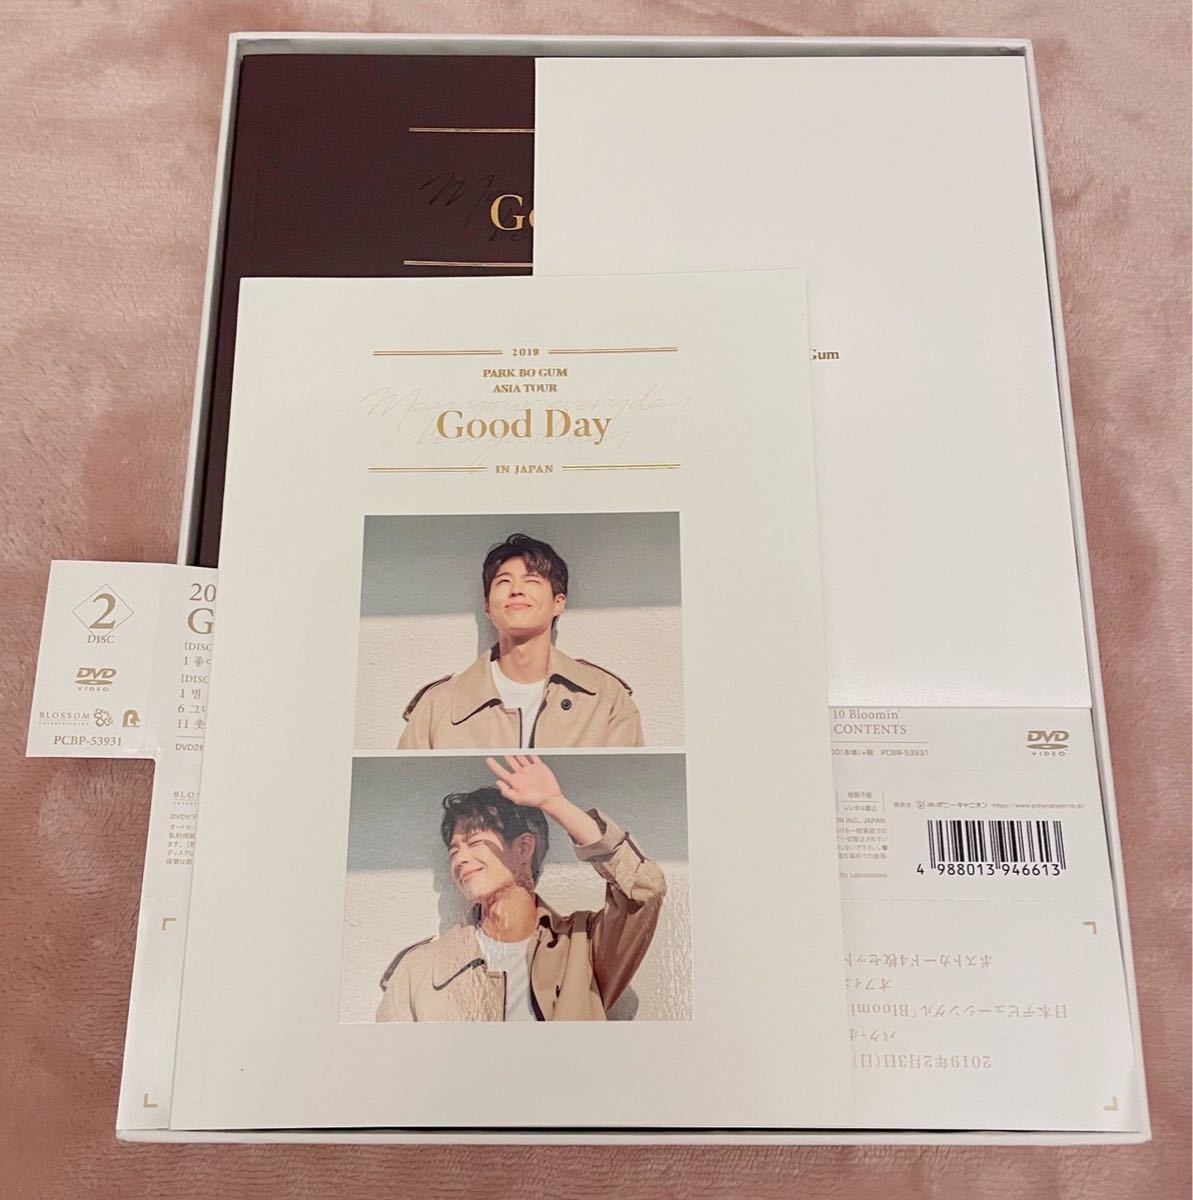 限定販売】 パク ボゴム 2019 Good Day IN JAPAN〈2枚組〉DVD econet.bi